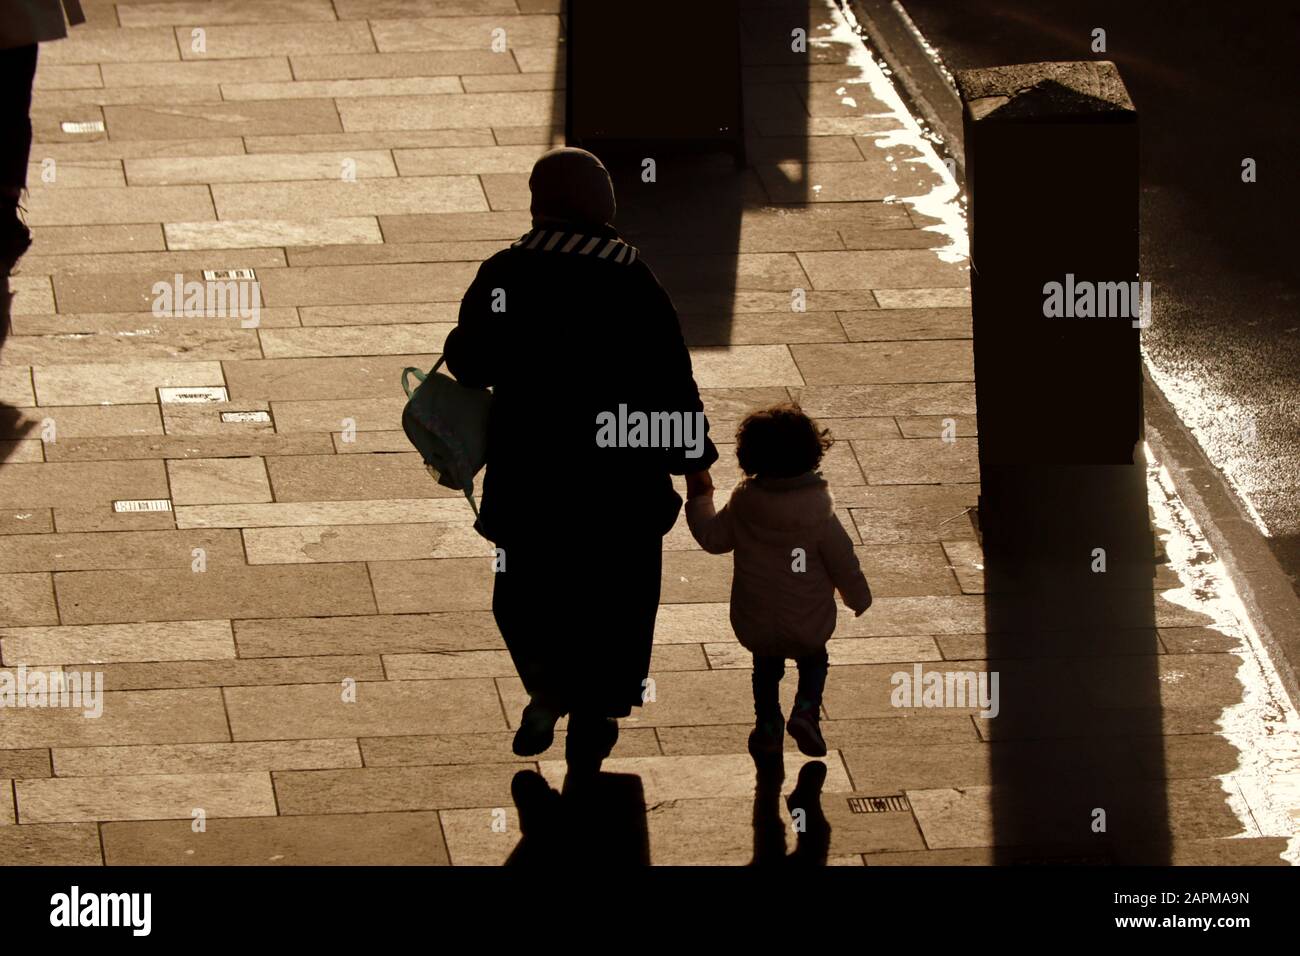 Étrangers, immigrants ou demandeurs d'asile dans les rues du Royaume-Uni. Mère familiale avec enfant marchant en silhouette Banque D'Images